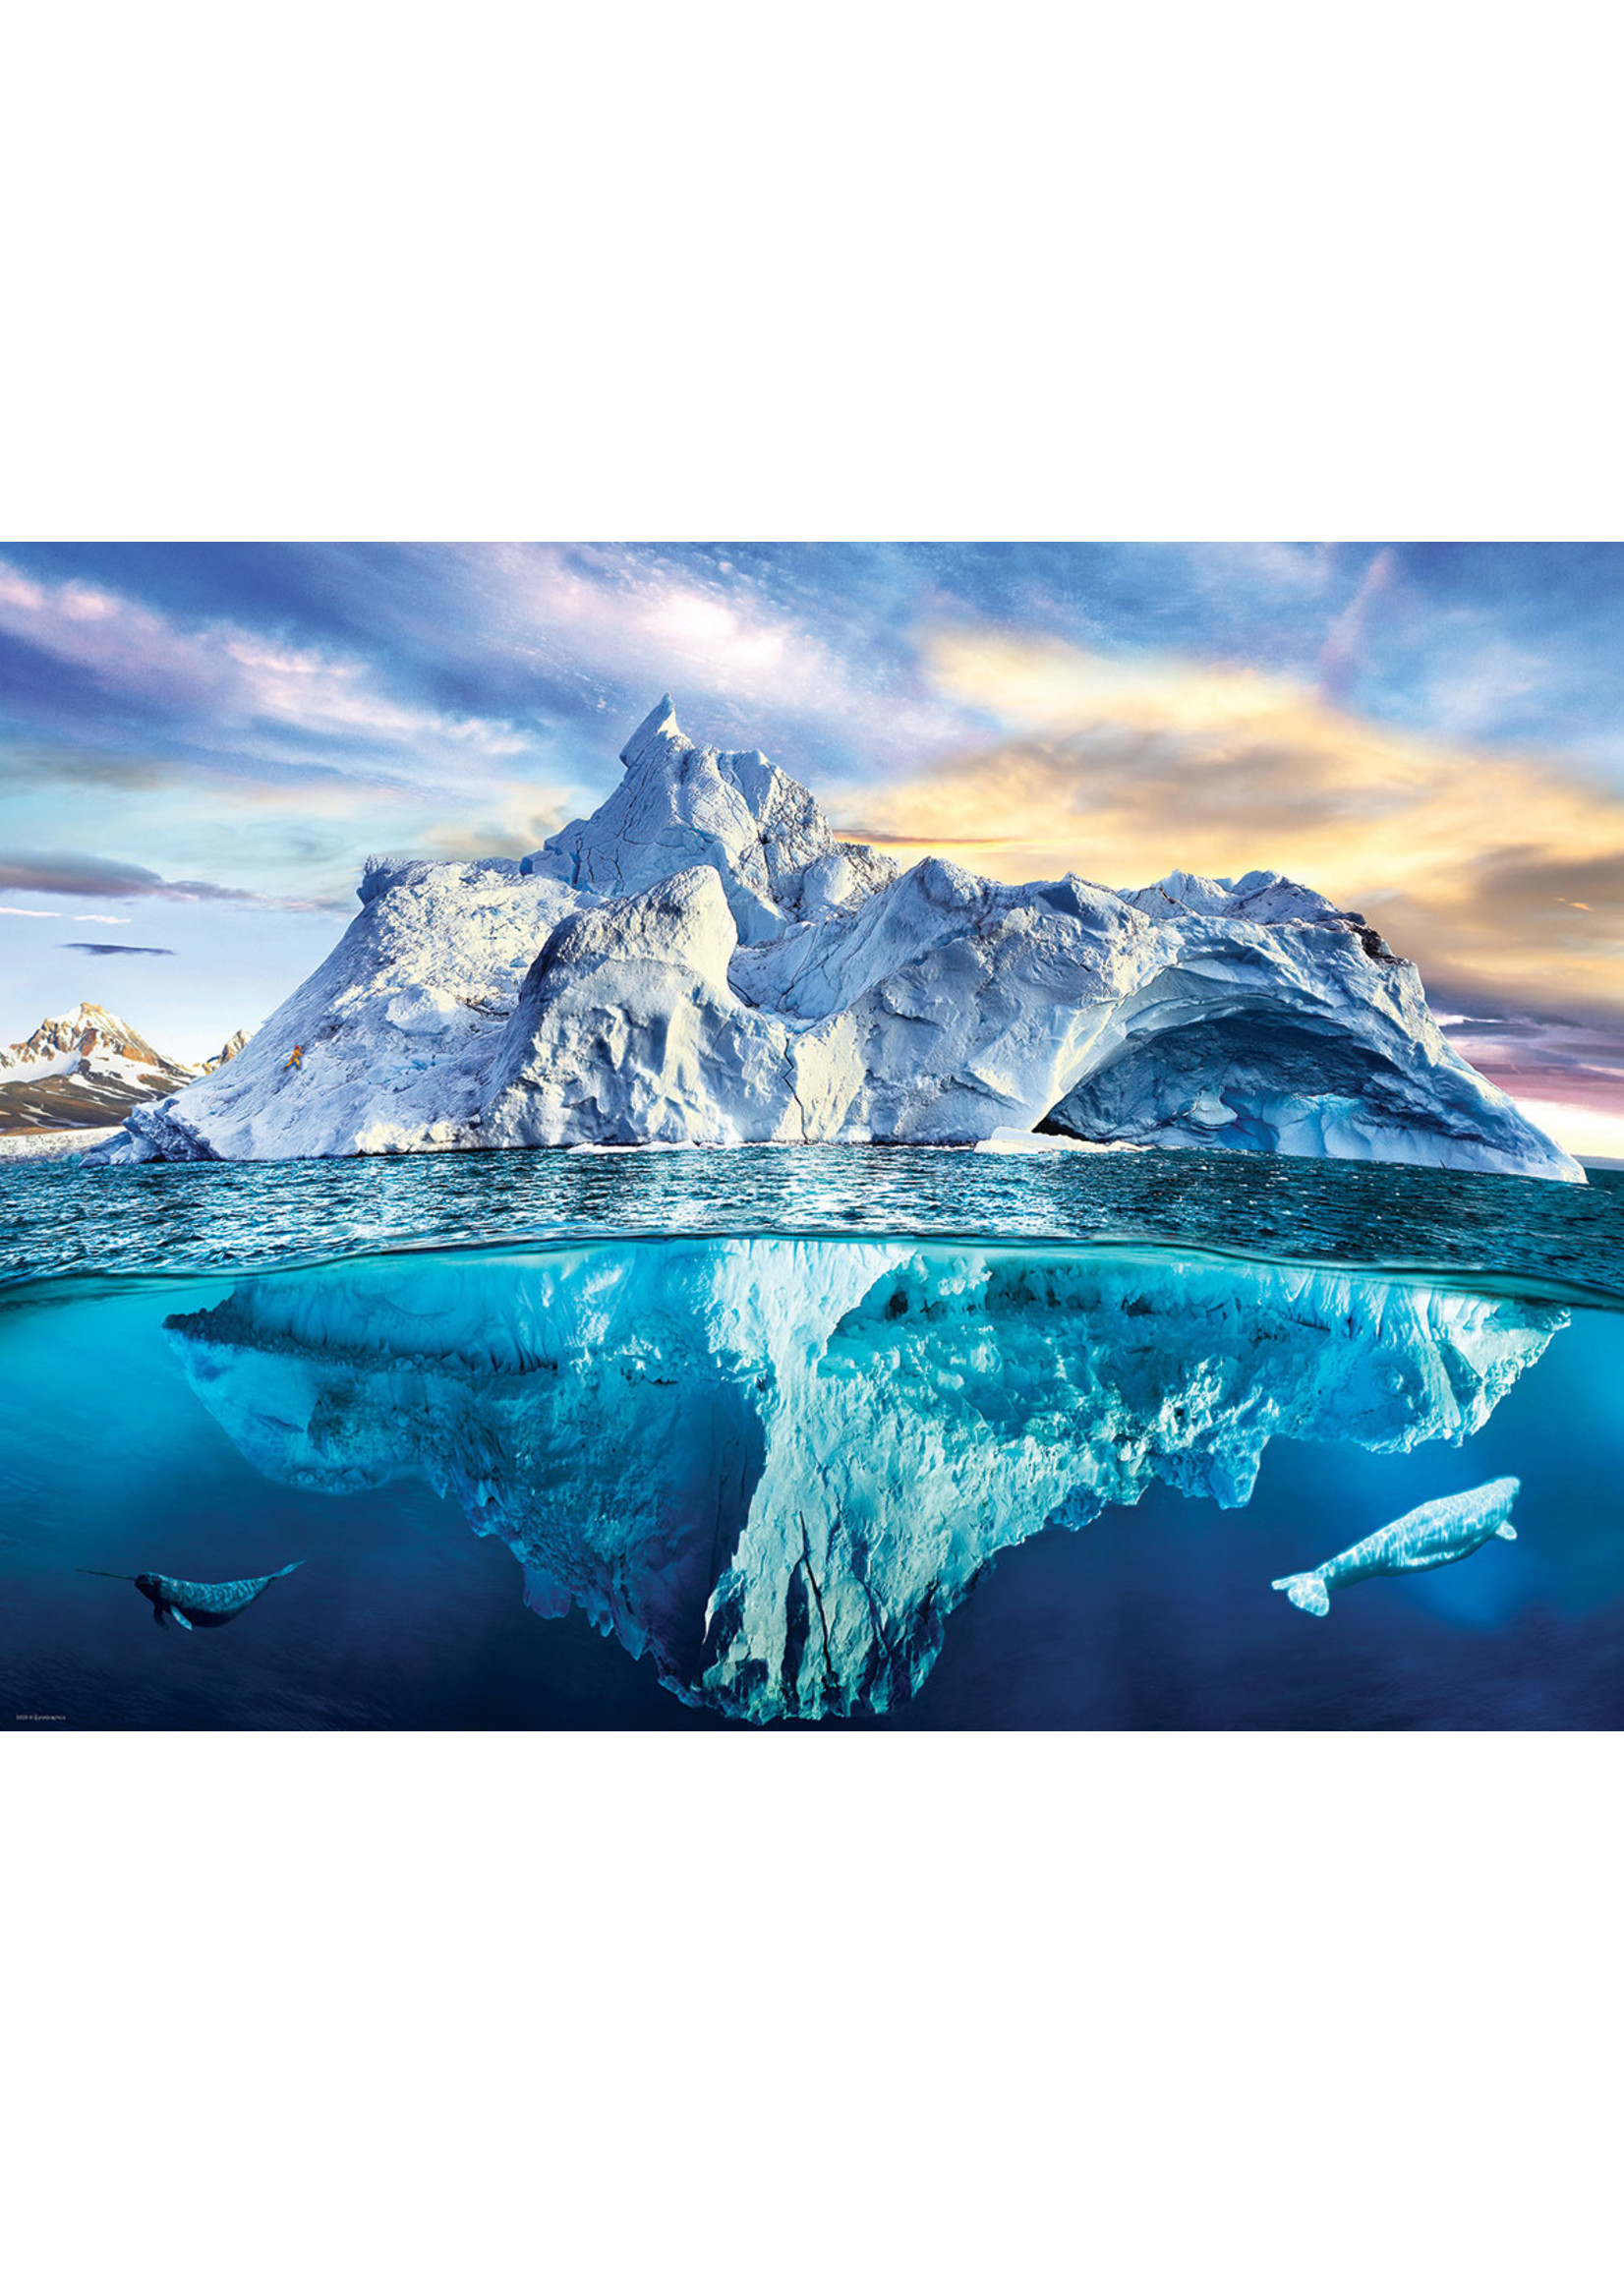 Eurographics Arctic - 1000 Piece Puzzle